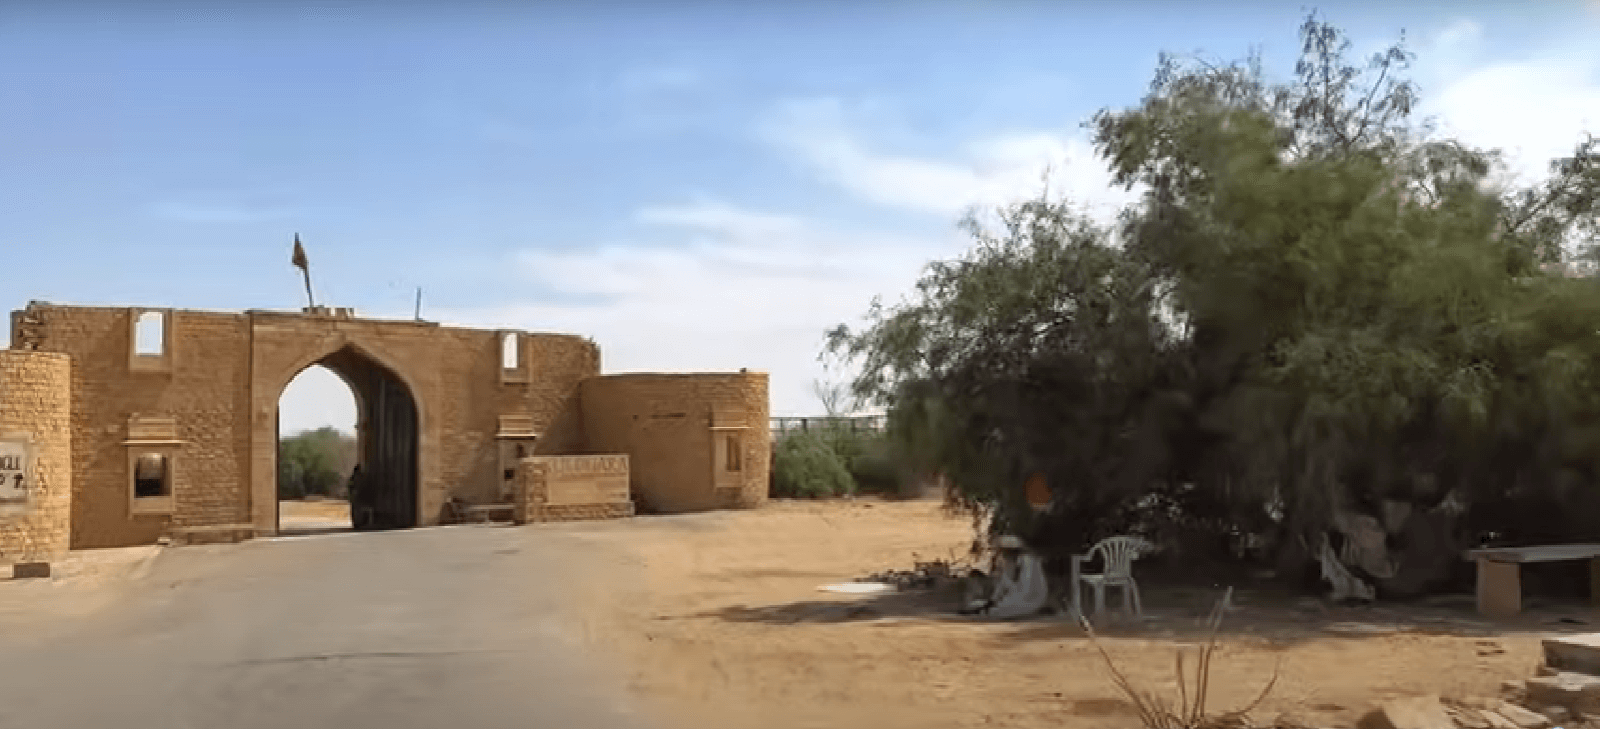 Kuldhara Village Jaisalmer haunted place 